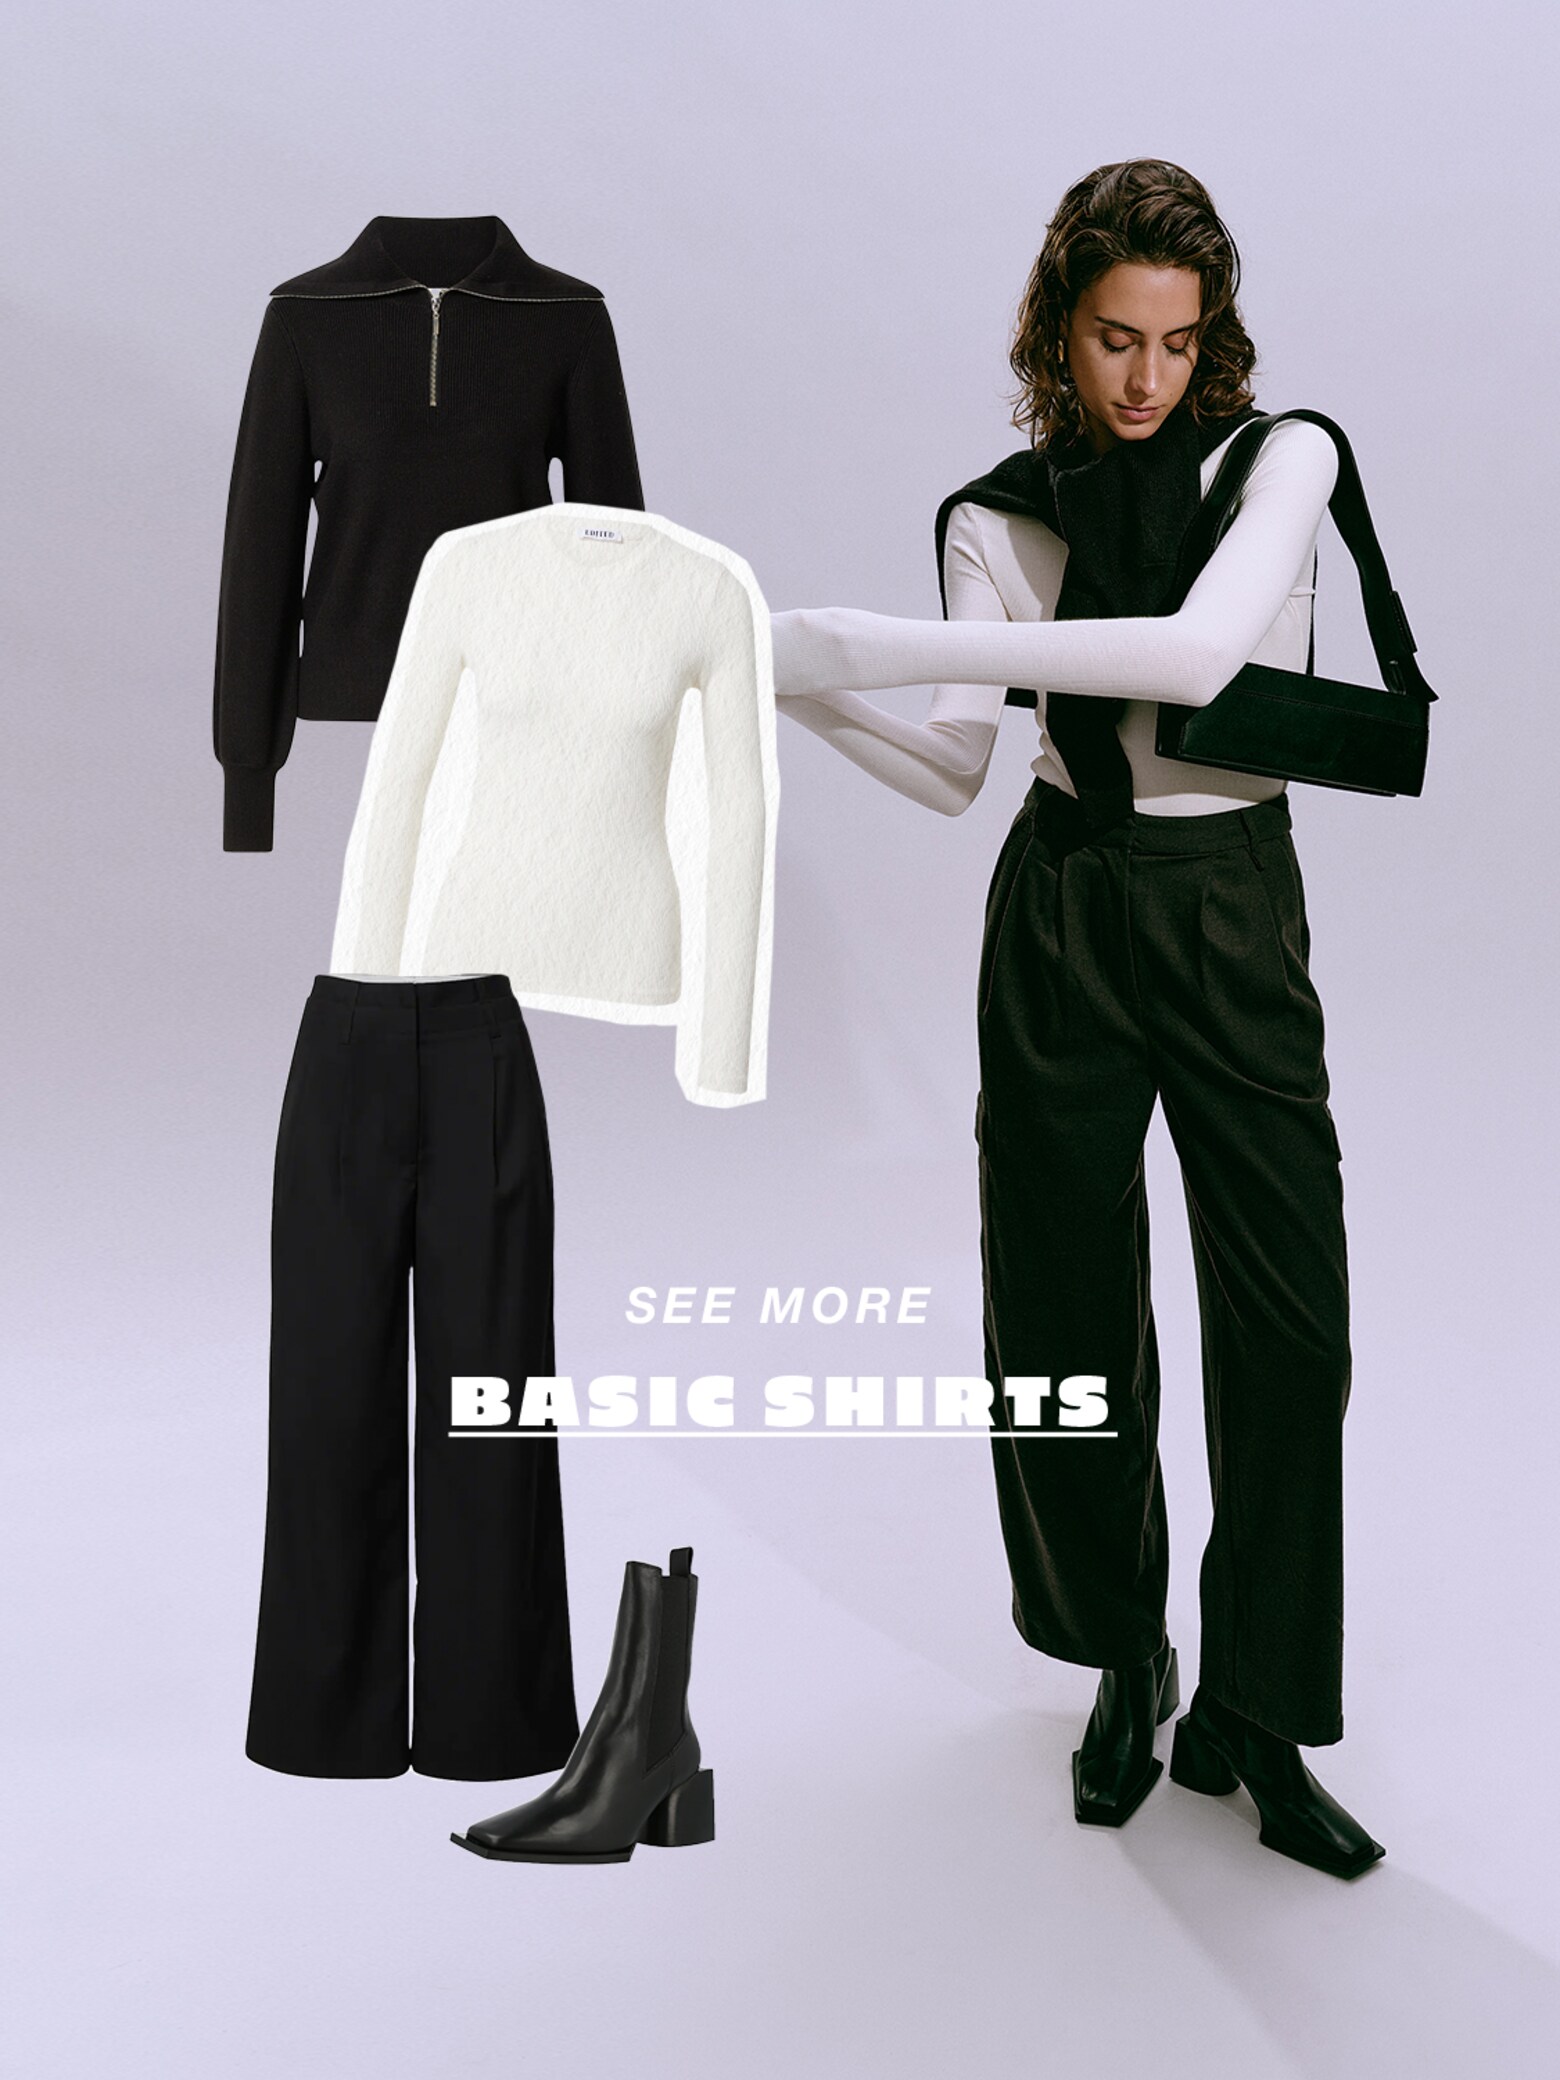 Creează-ți o garderobă minimalistă Garderobă minimalistă